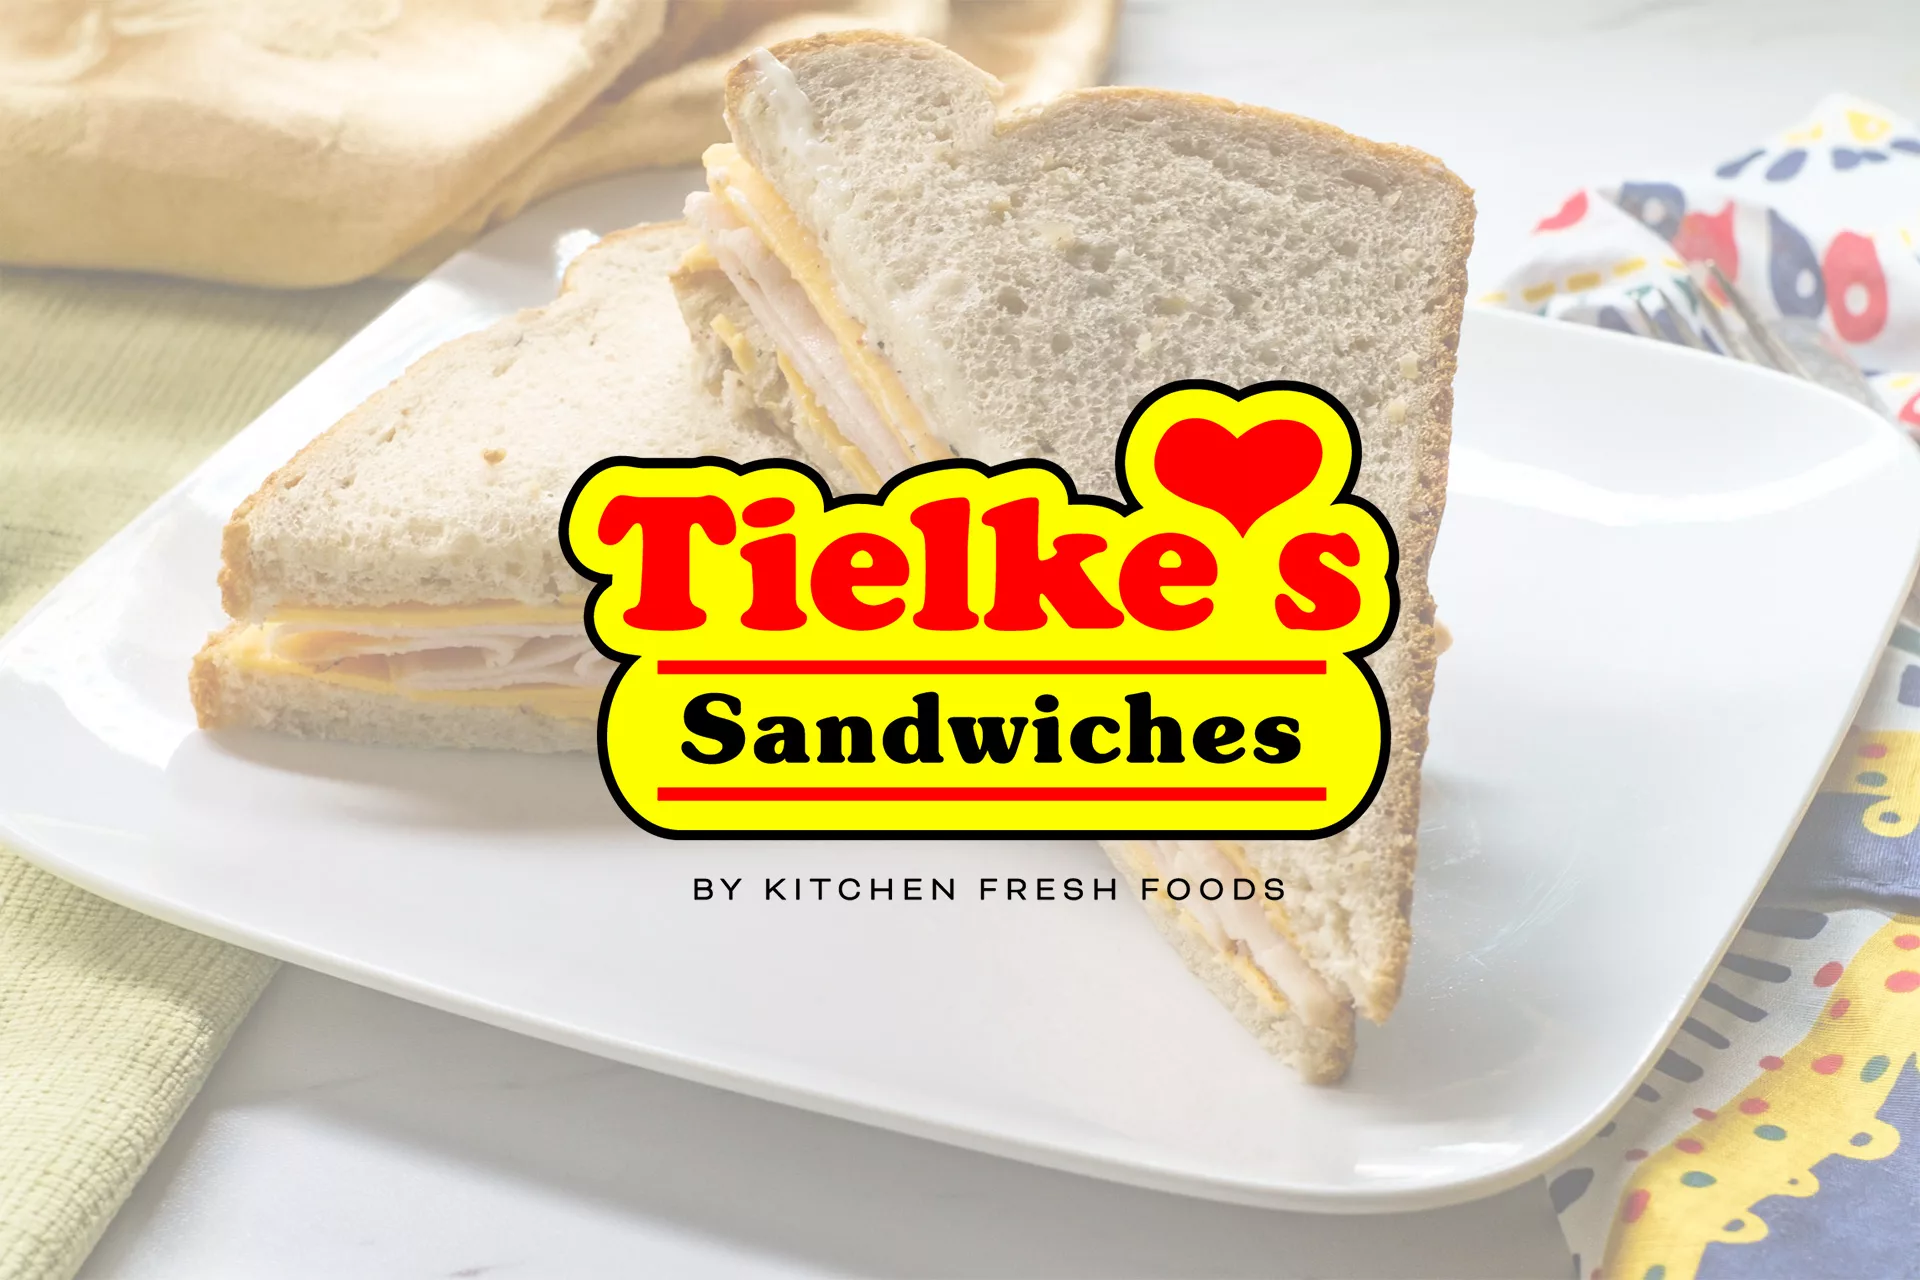 Kitchen Fresh Foods Acquires Tielke’s Sandwiches